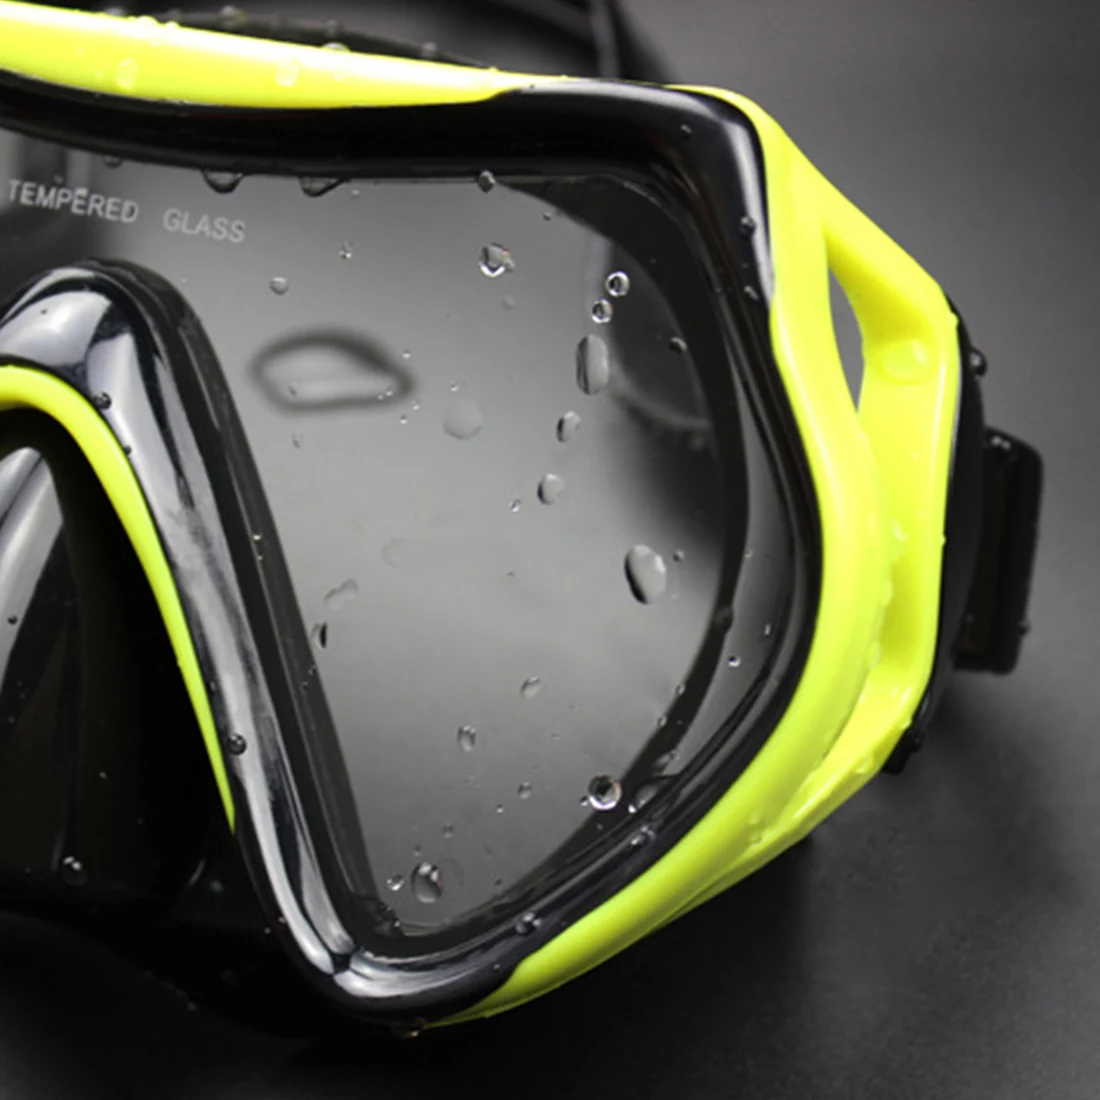 Новая профессиональная маска для подводного плавания, ныряния с дыхательной трубкой, противотуманные очки, Набор очков, силиконовые плавательные заводь для рыбной ловли, оборудование 8 цветов для взрослых